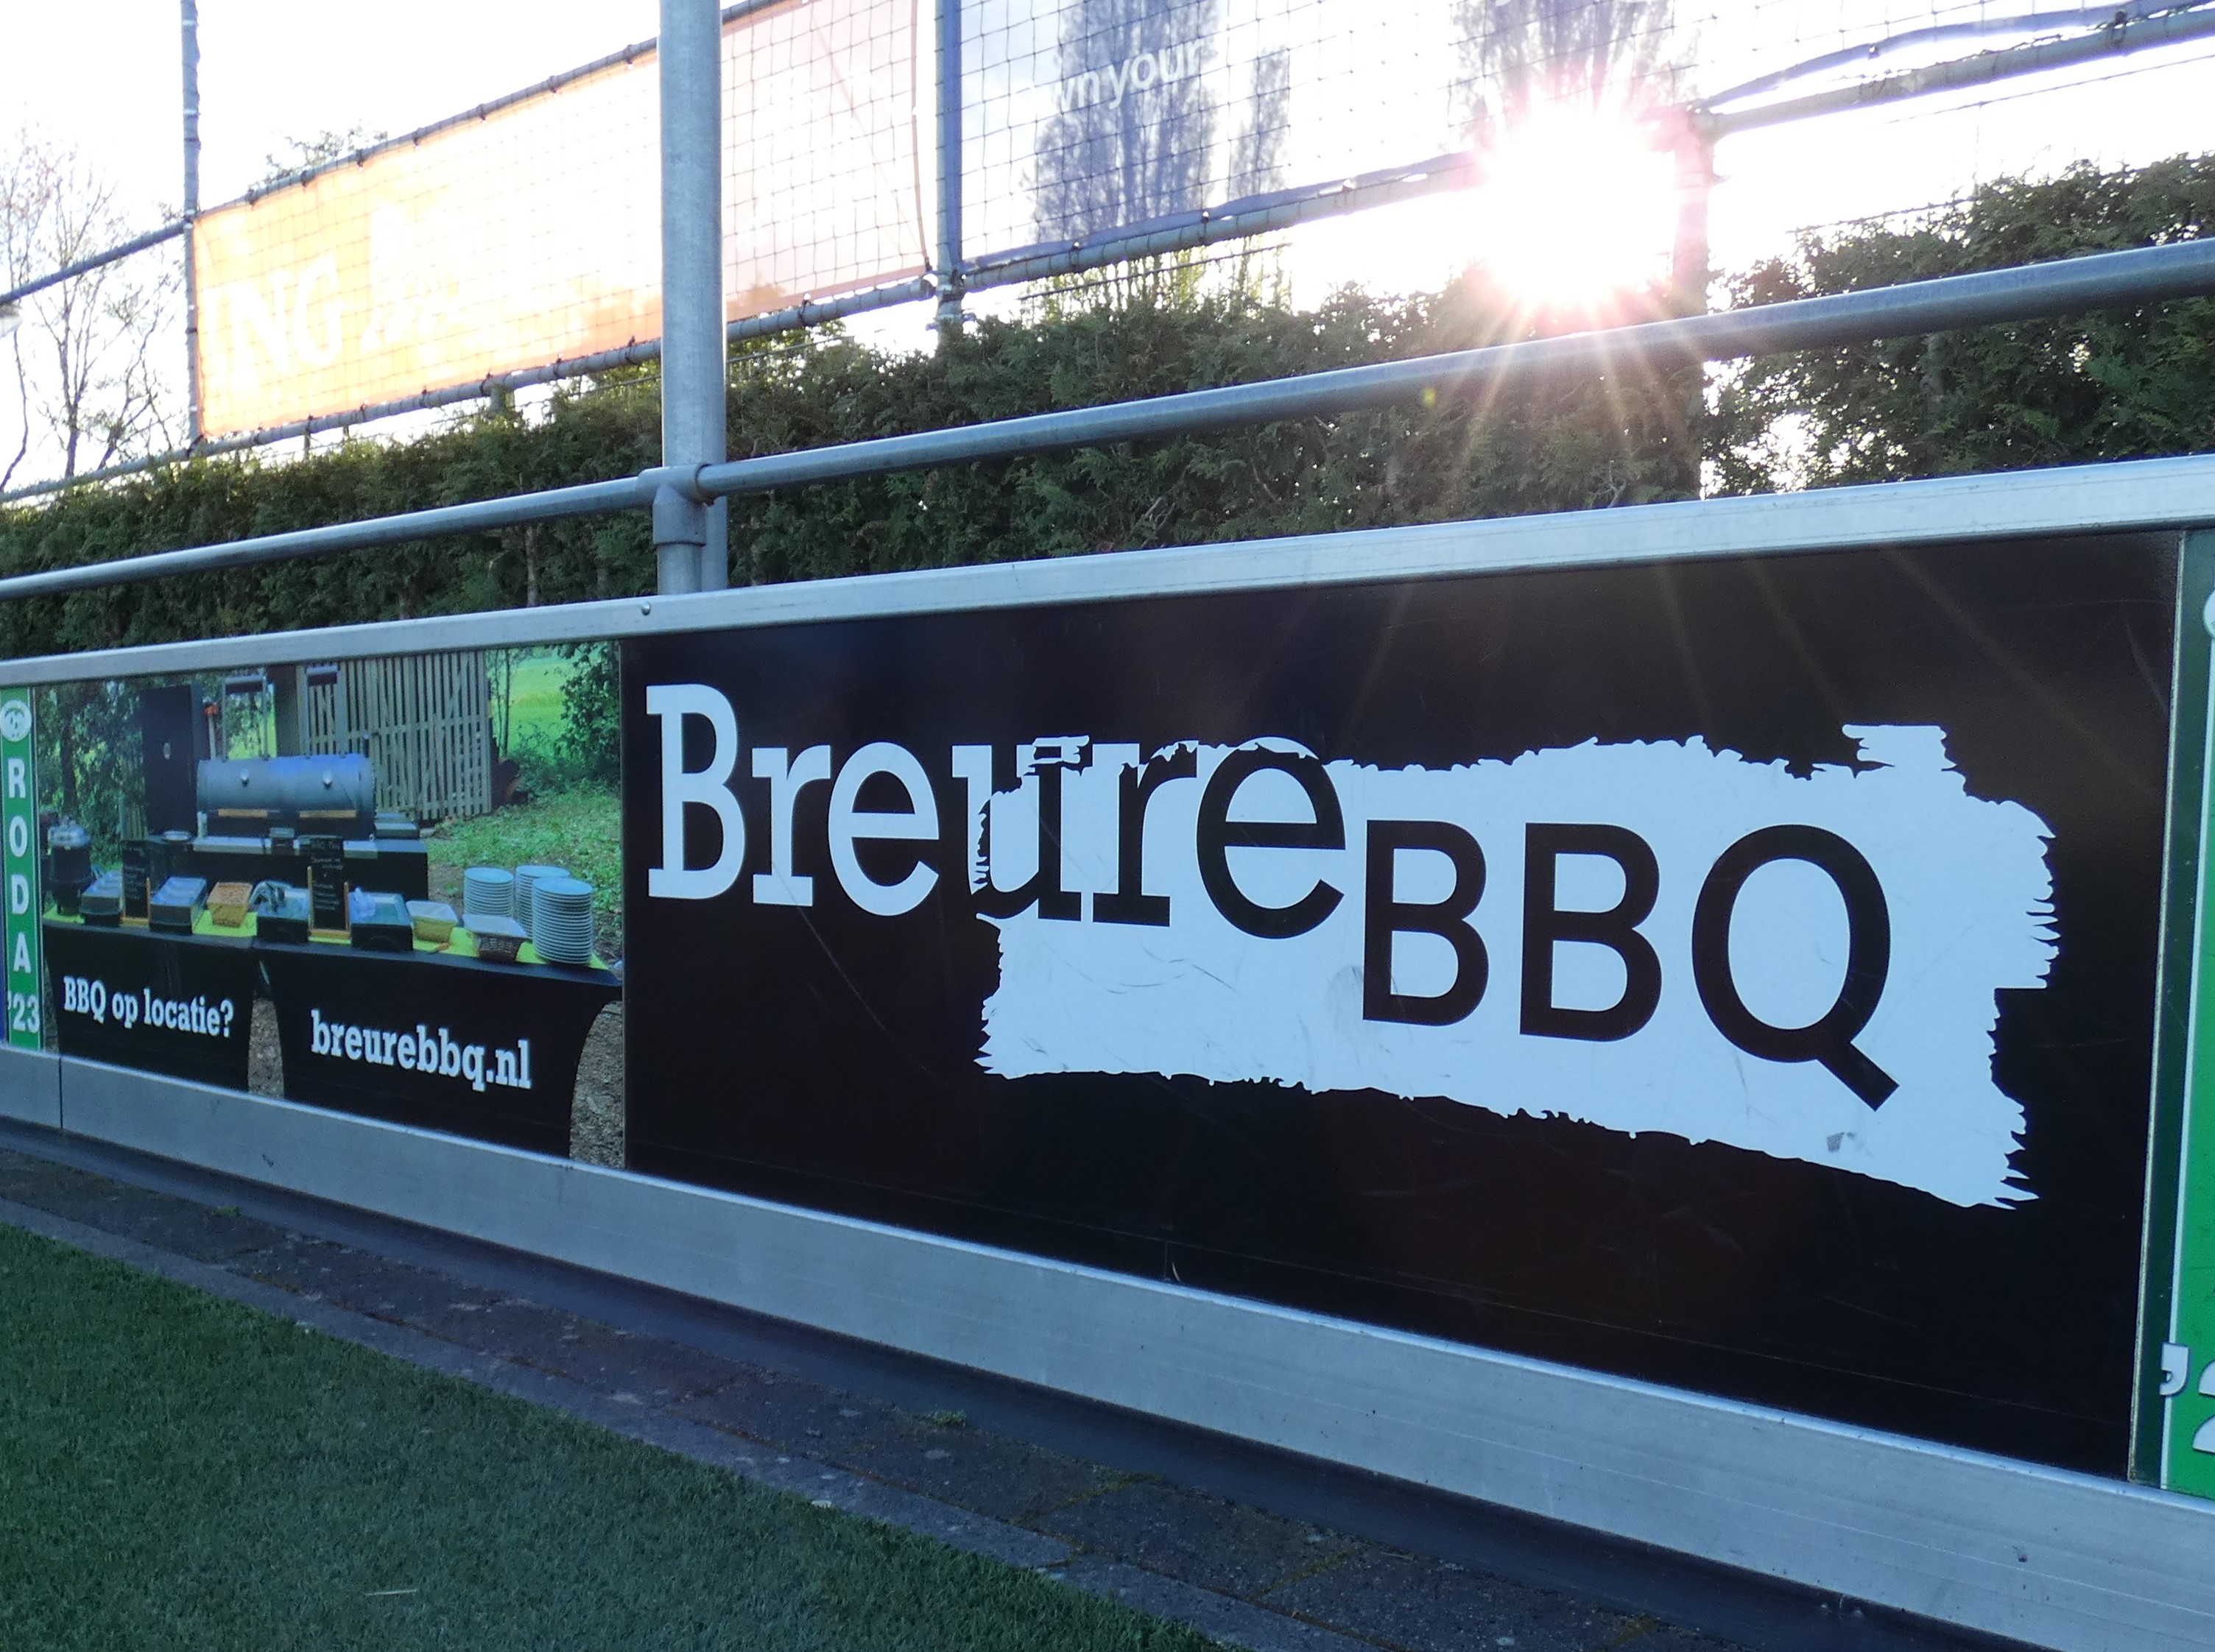 Sponsor in the Spotlight - Breure BBQ